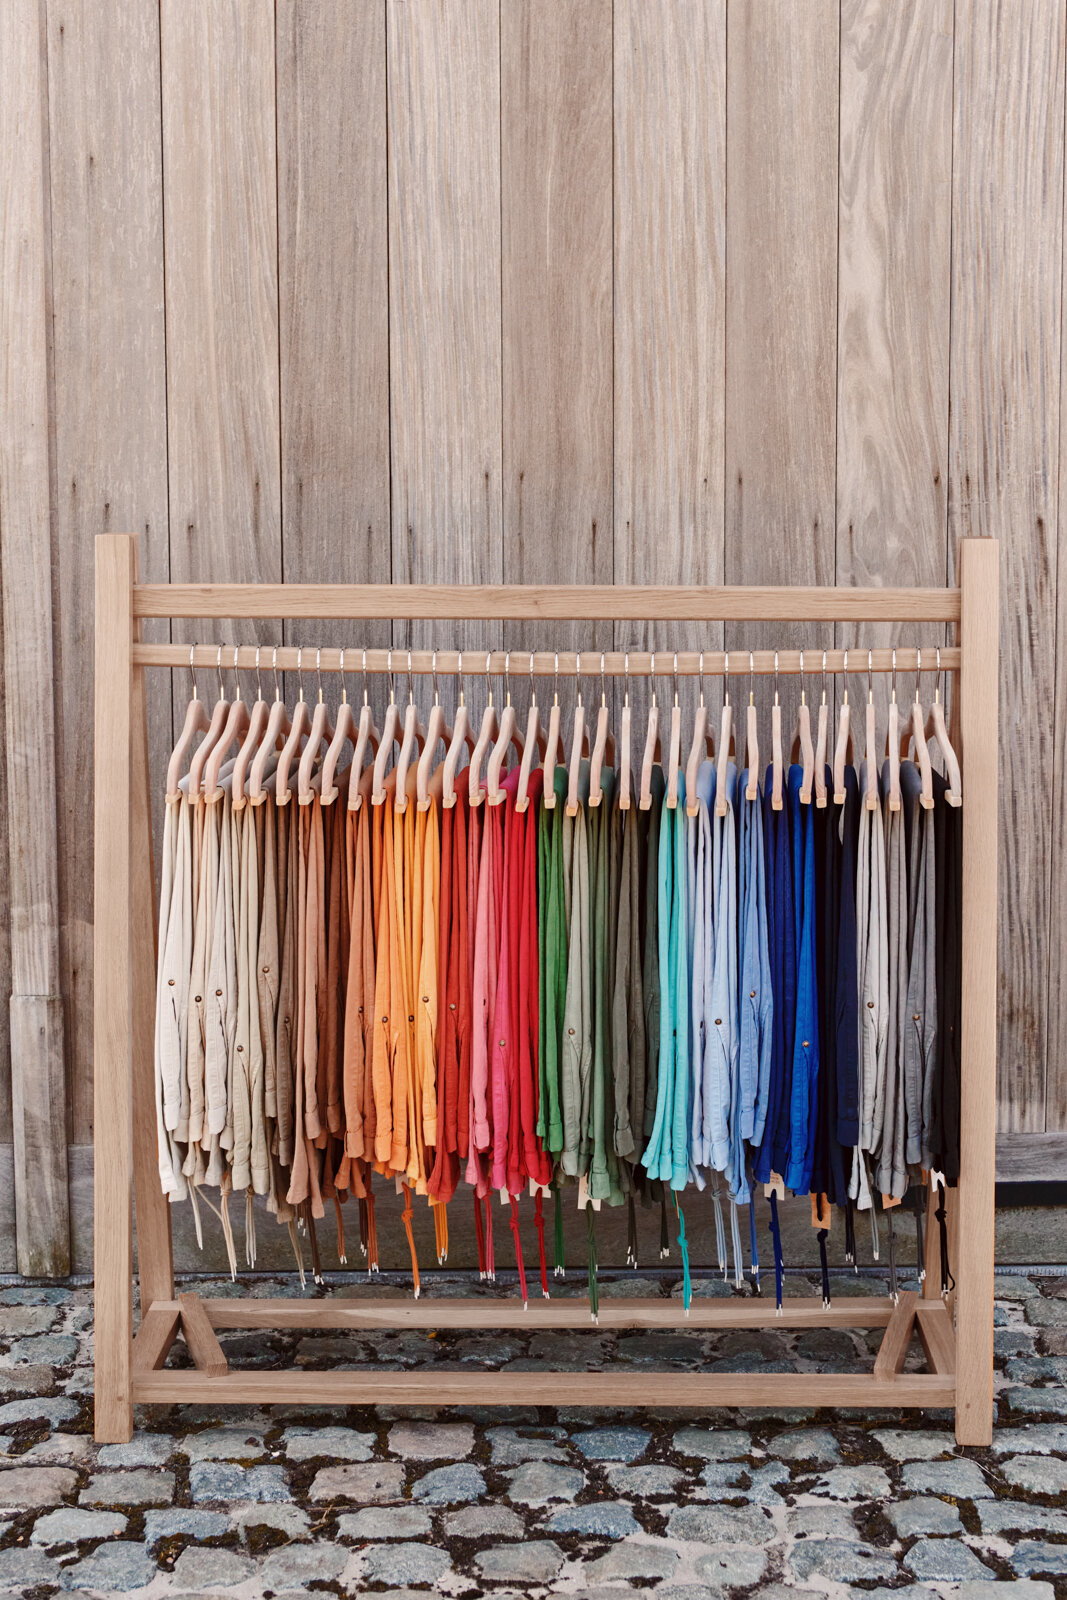 Chinos aller Farben hängen nebeneinander auf einem Kleiderständer